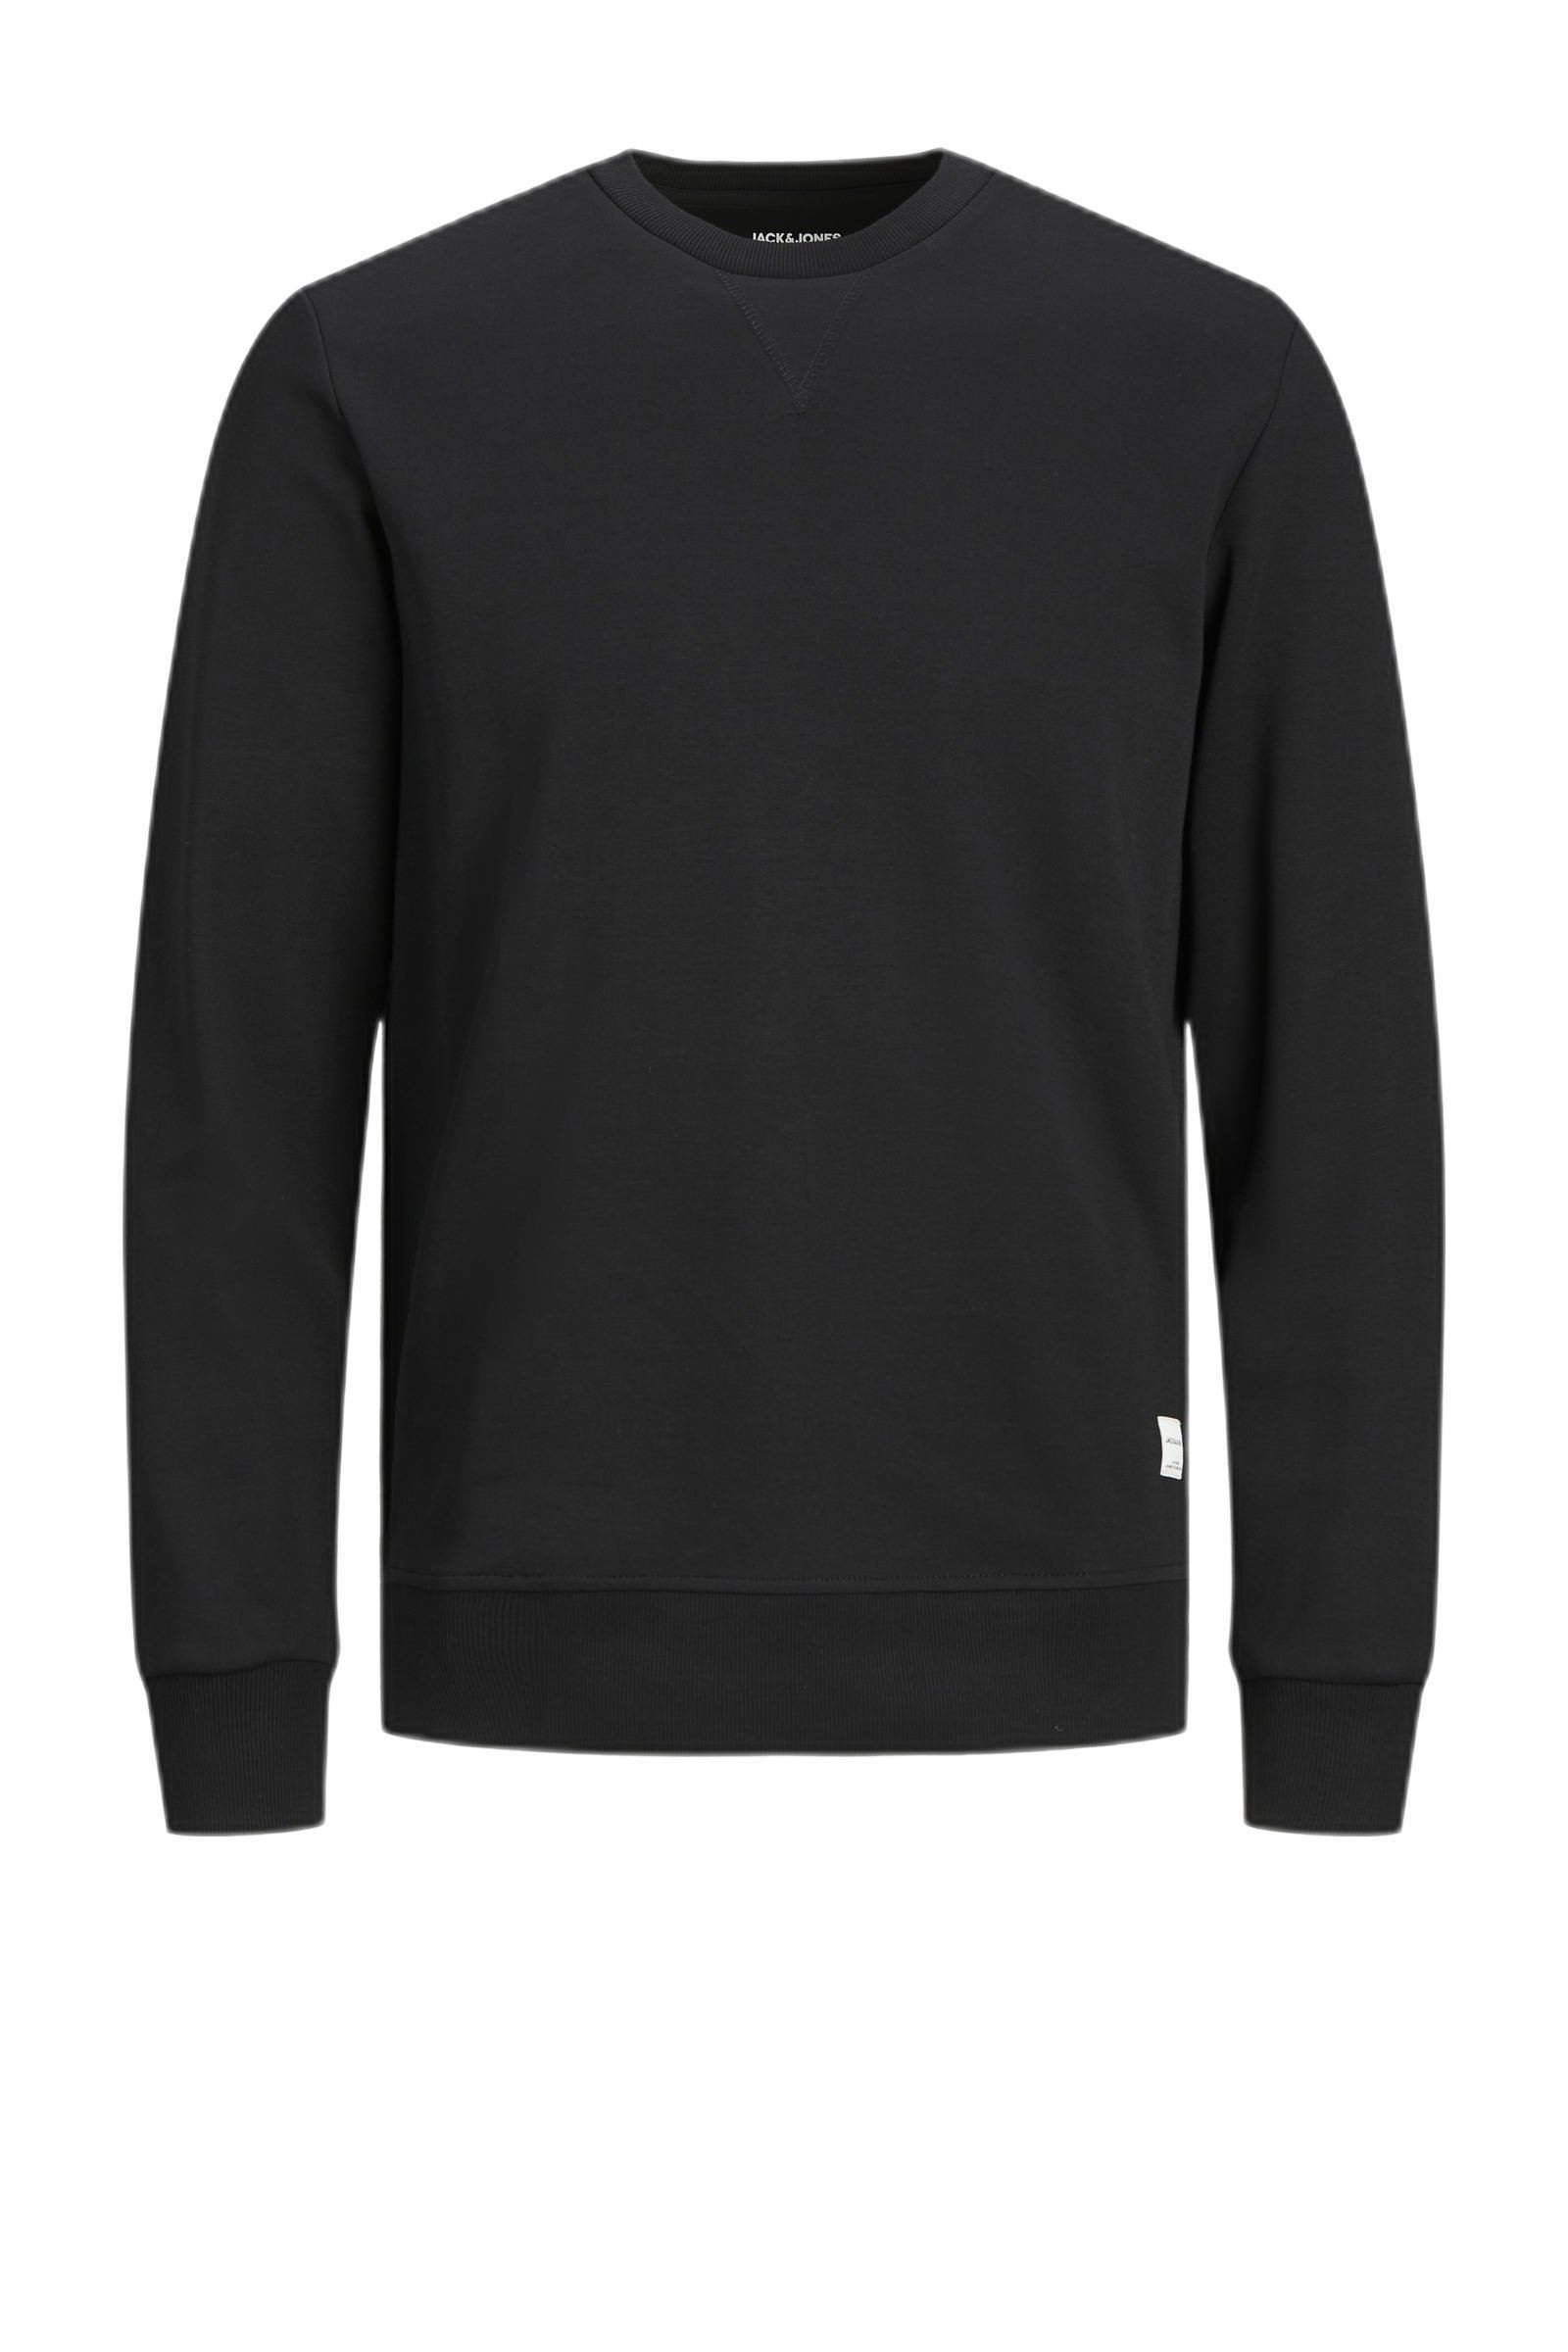 JACK & JONES ESSENTIALS sweater JJEBASIC zwart online kopen